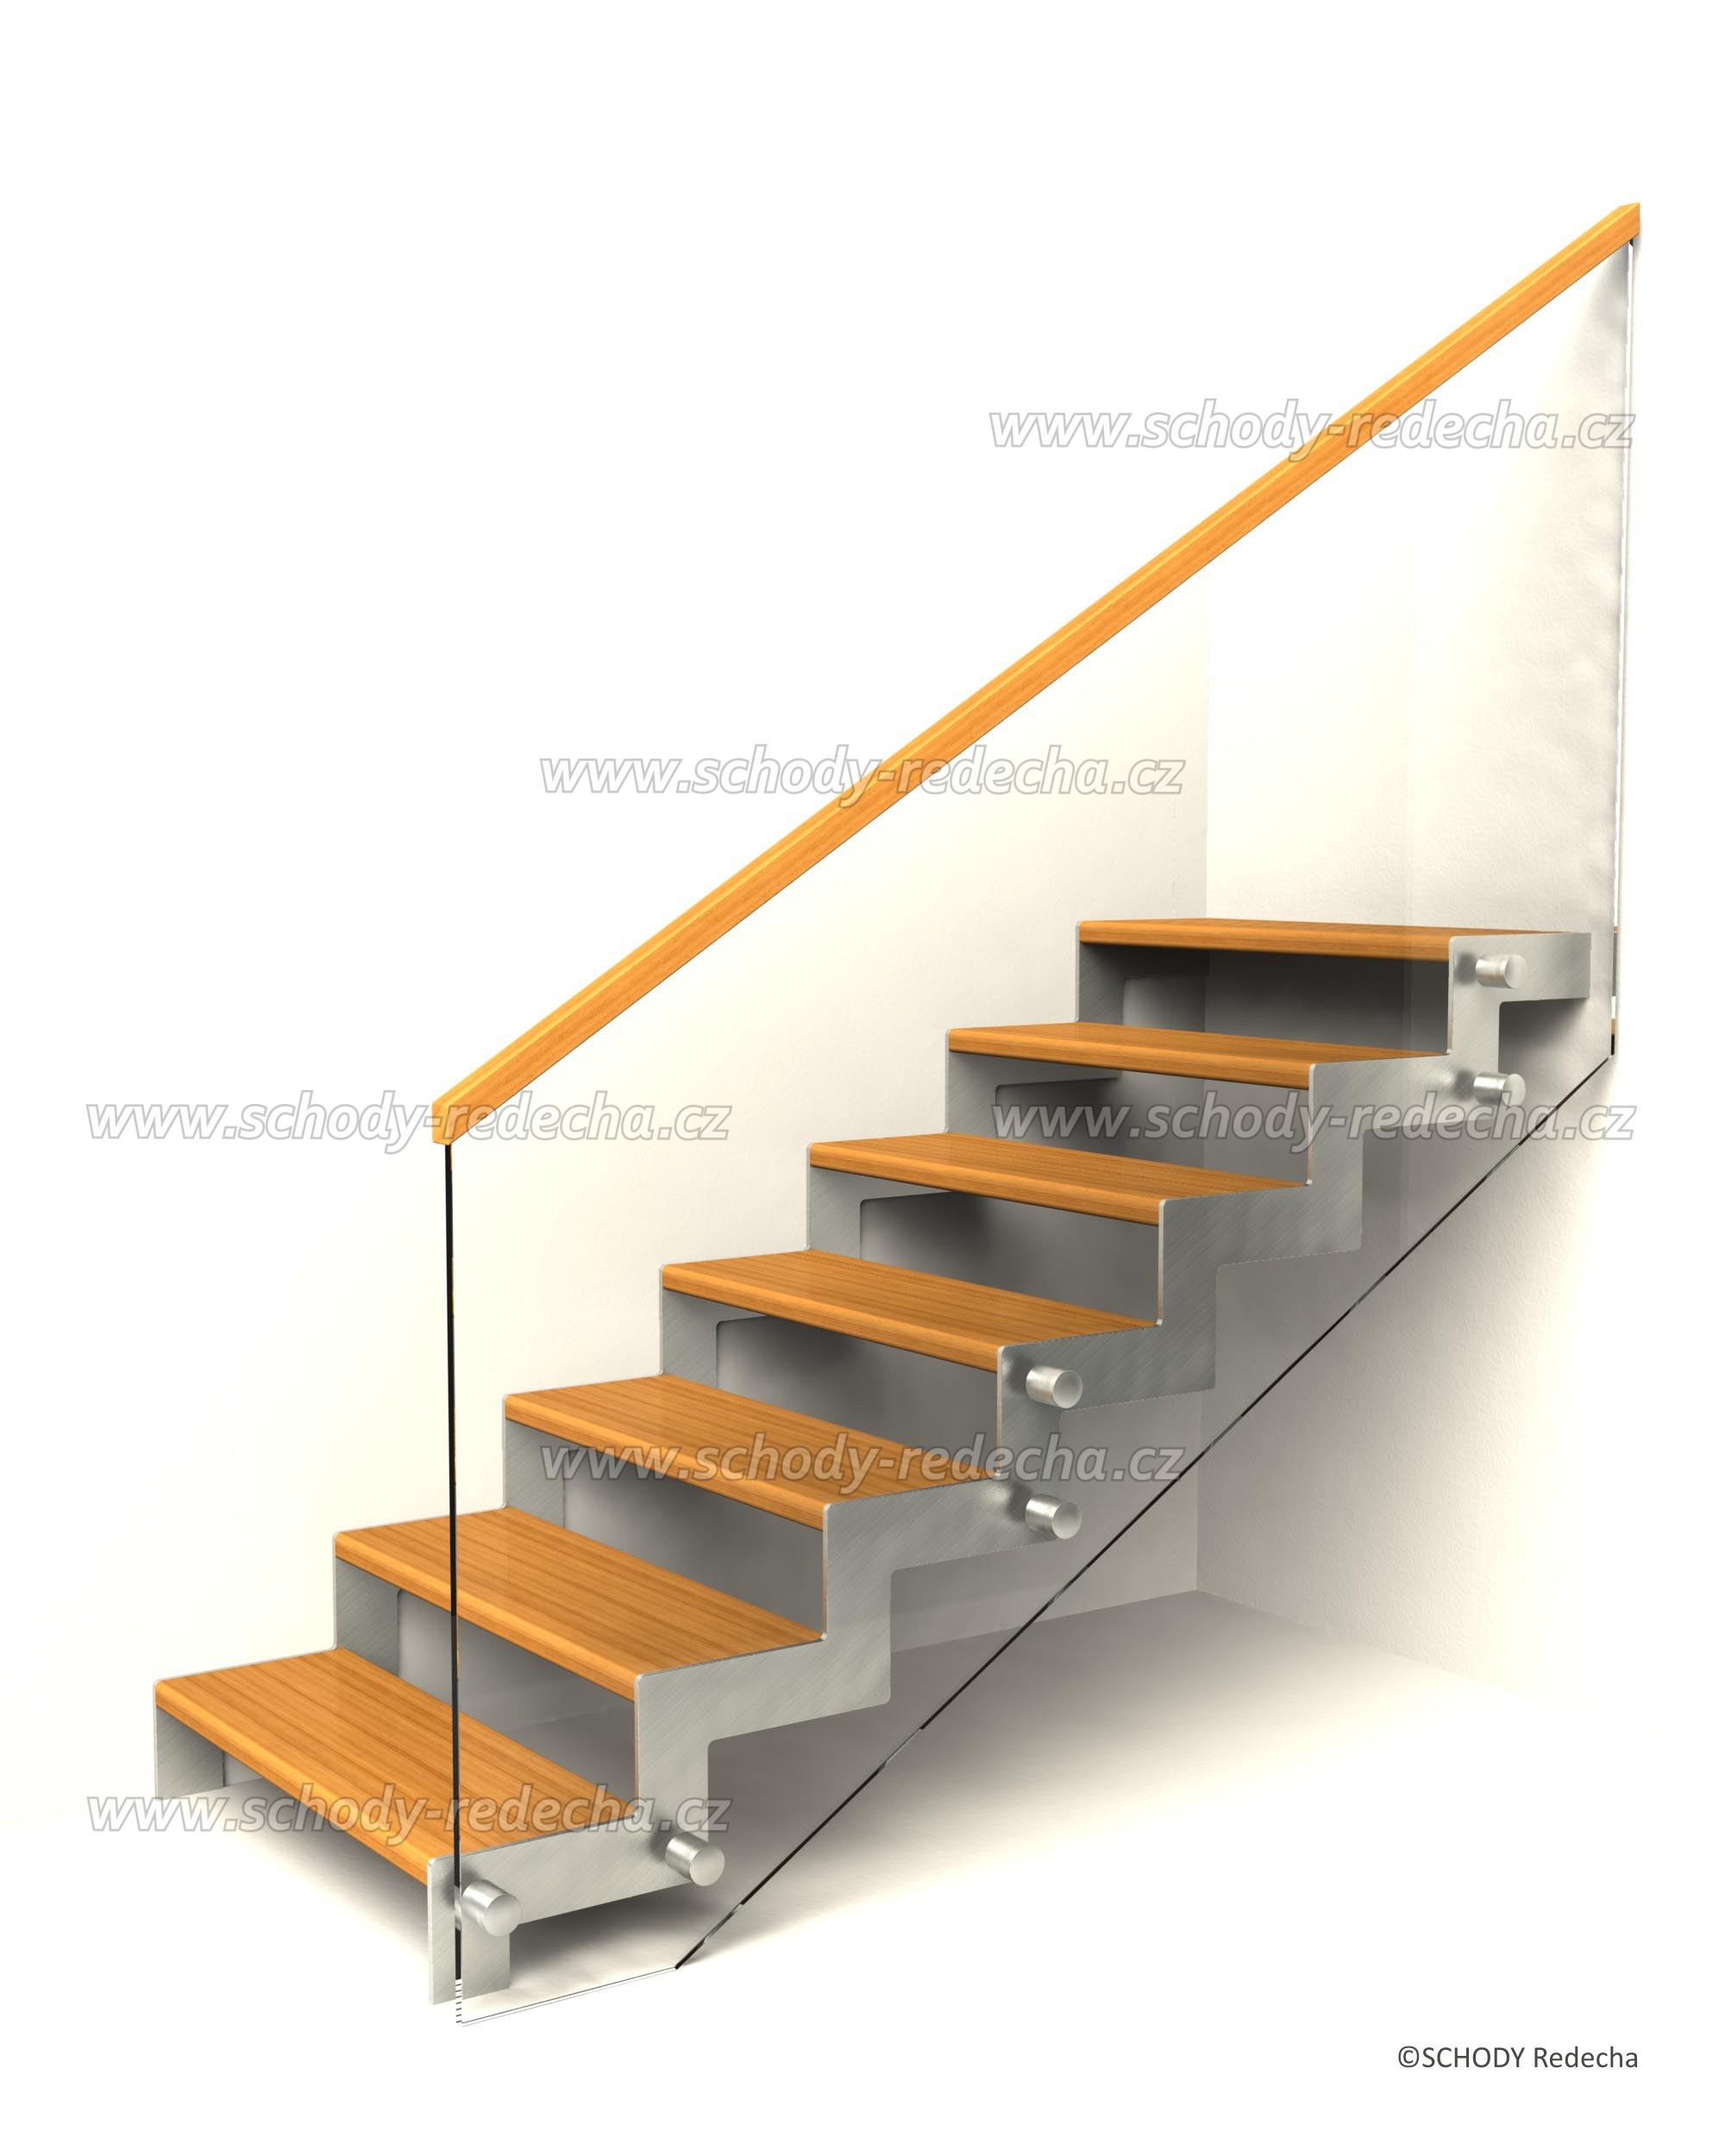 nerezove schody VS